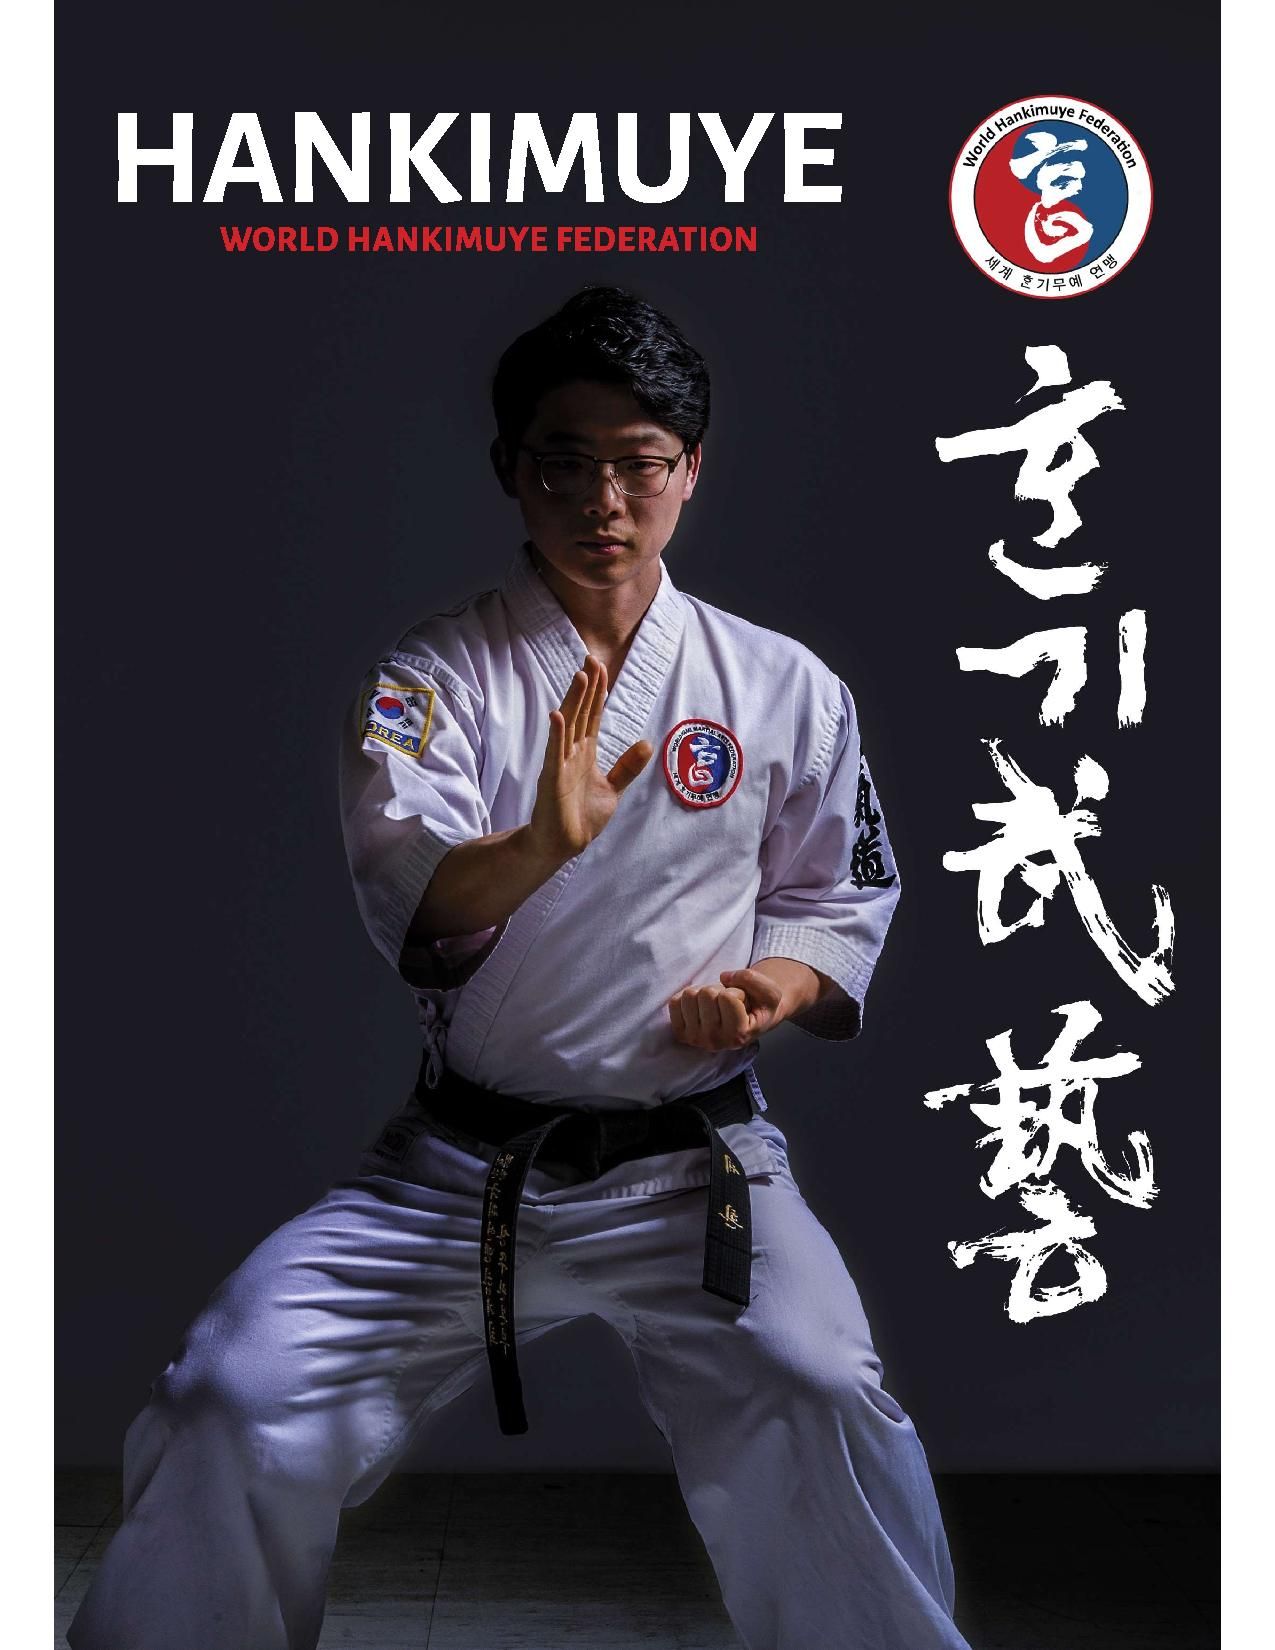 hankimuye magazine front cover